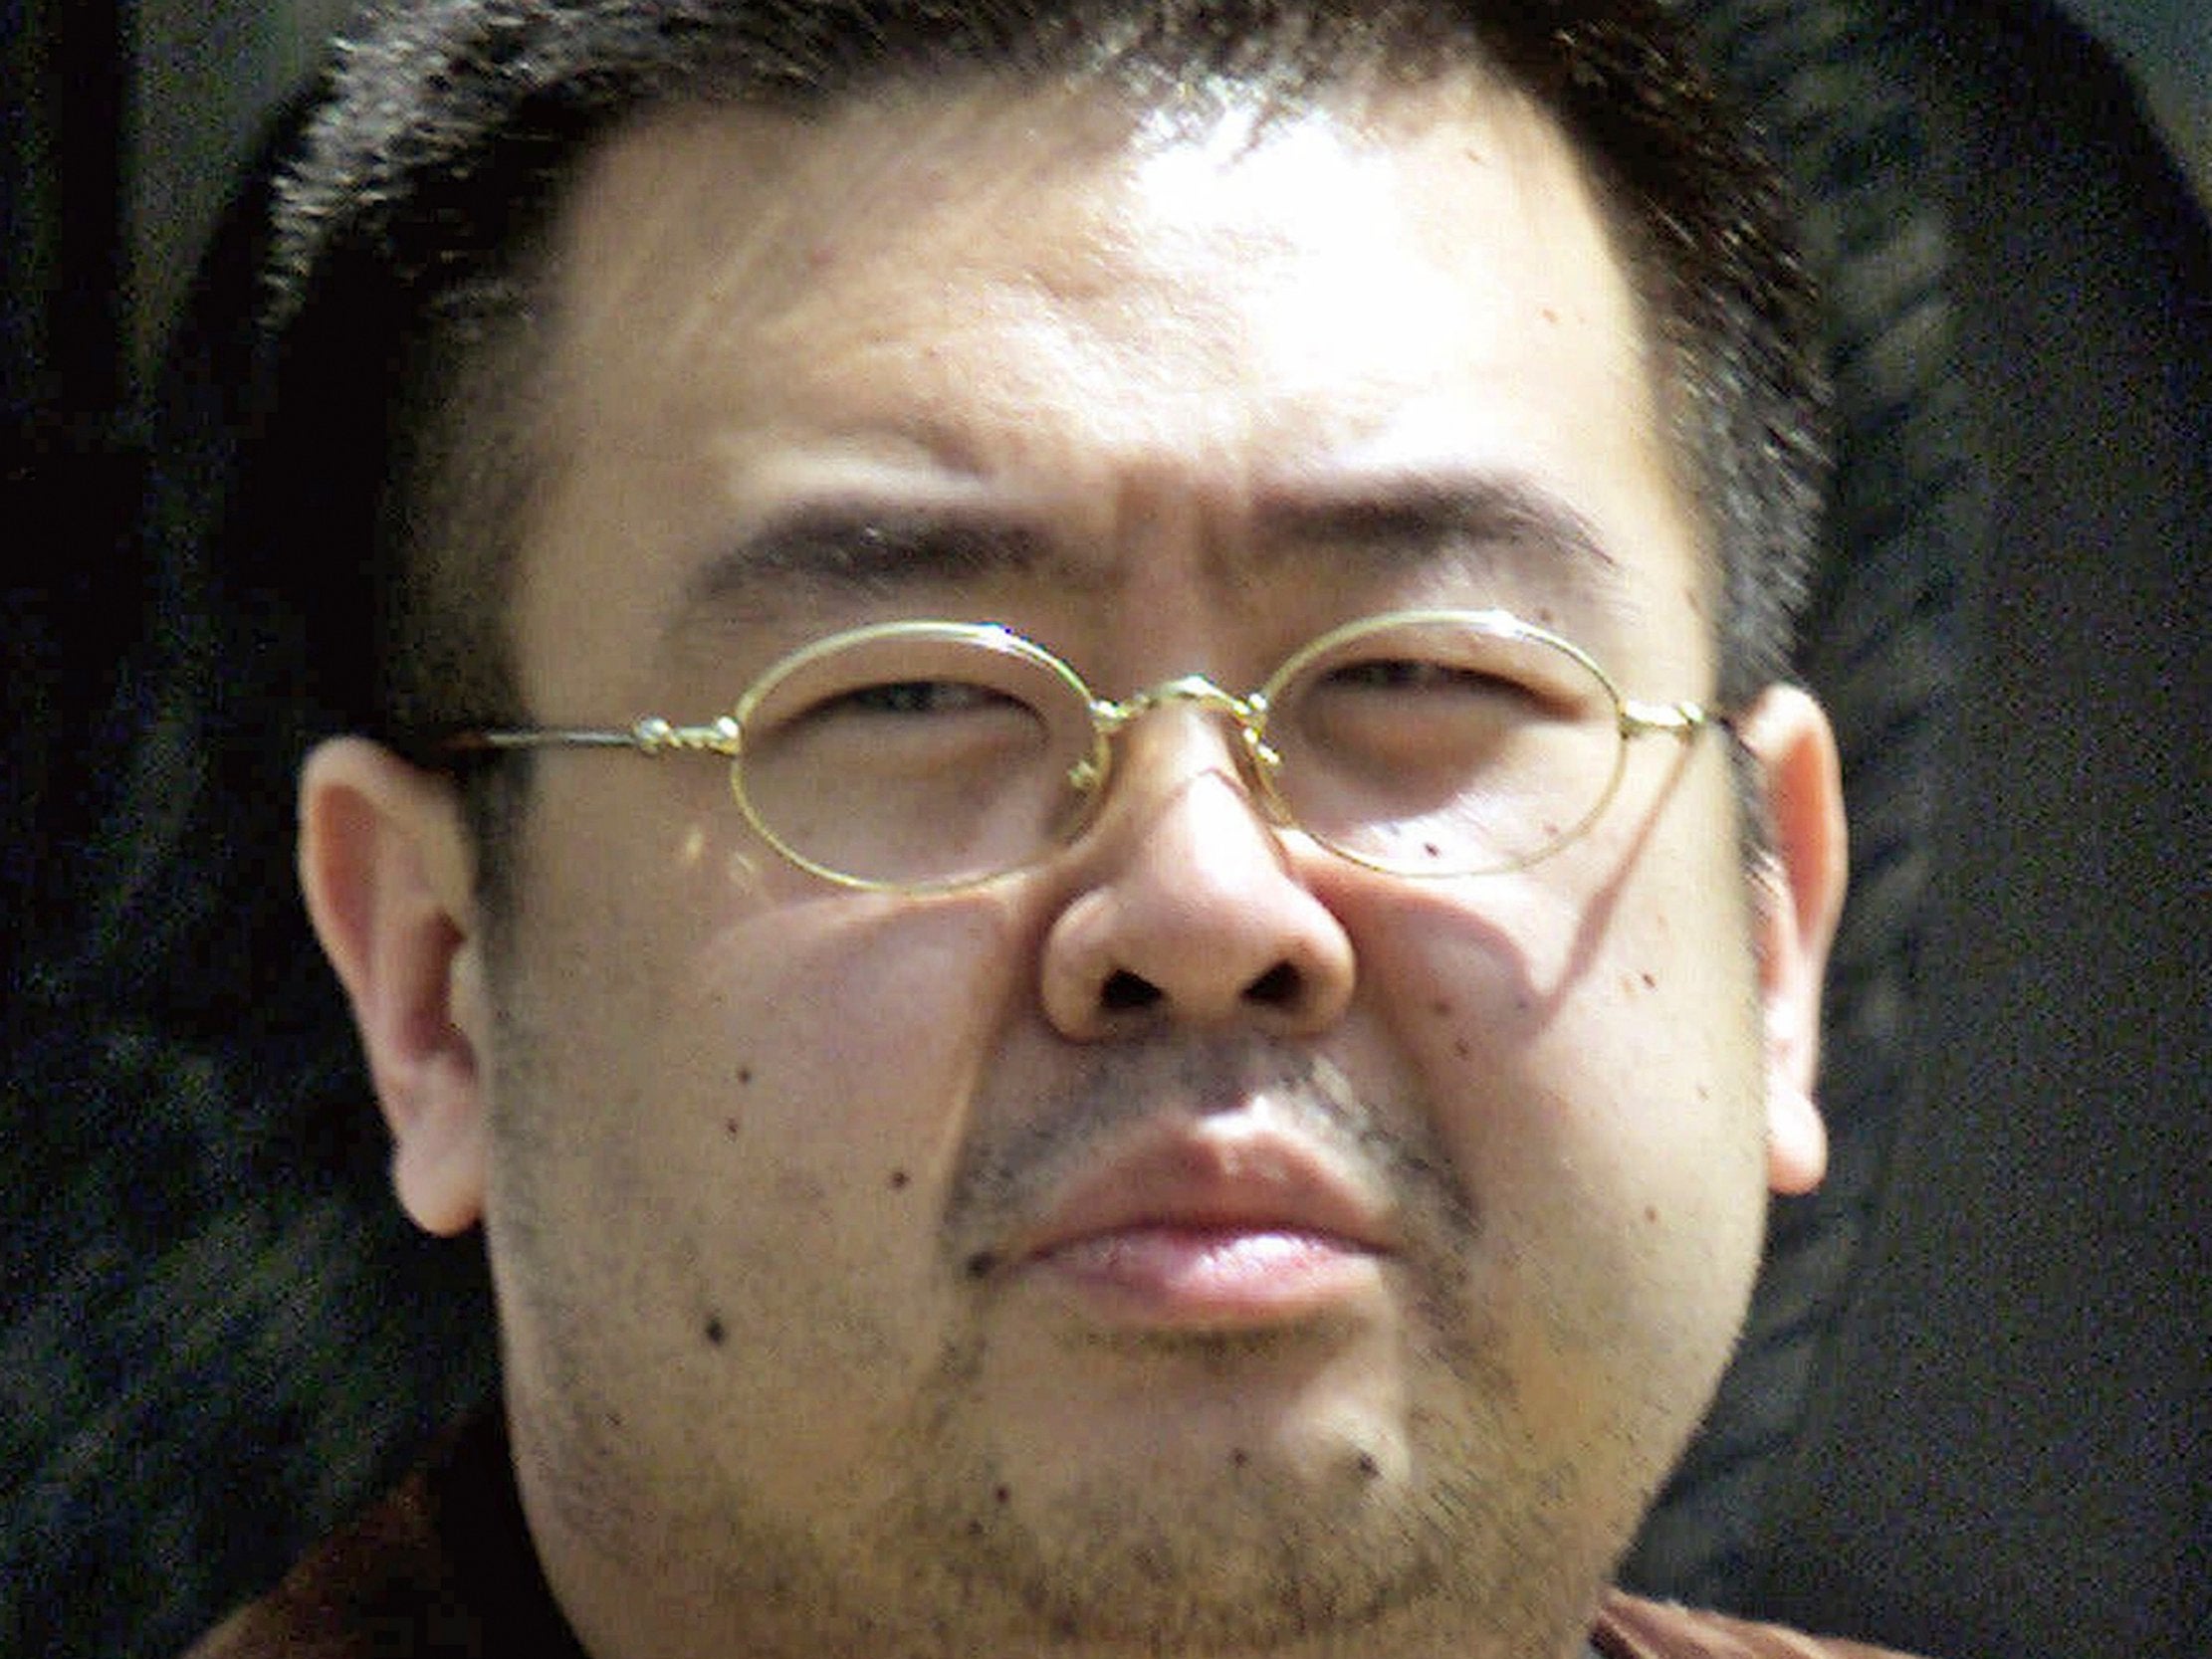 Kim Jong Nam, exiled half brother of North Korea's leader Kim Jong Un.